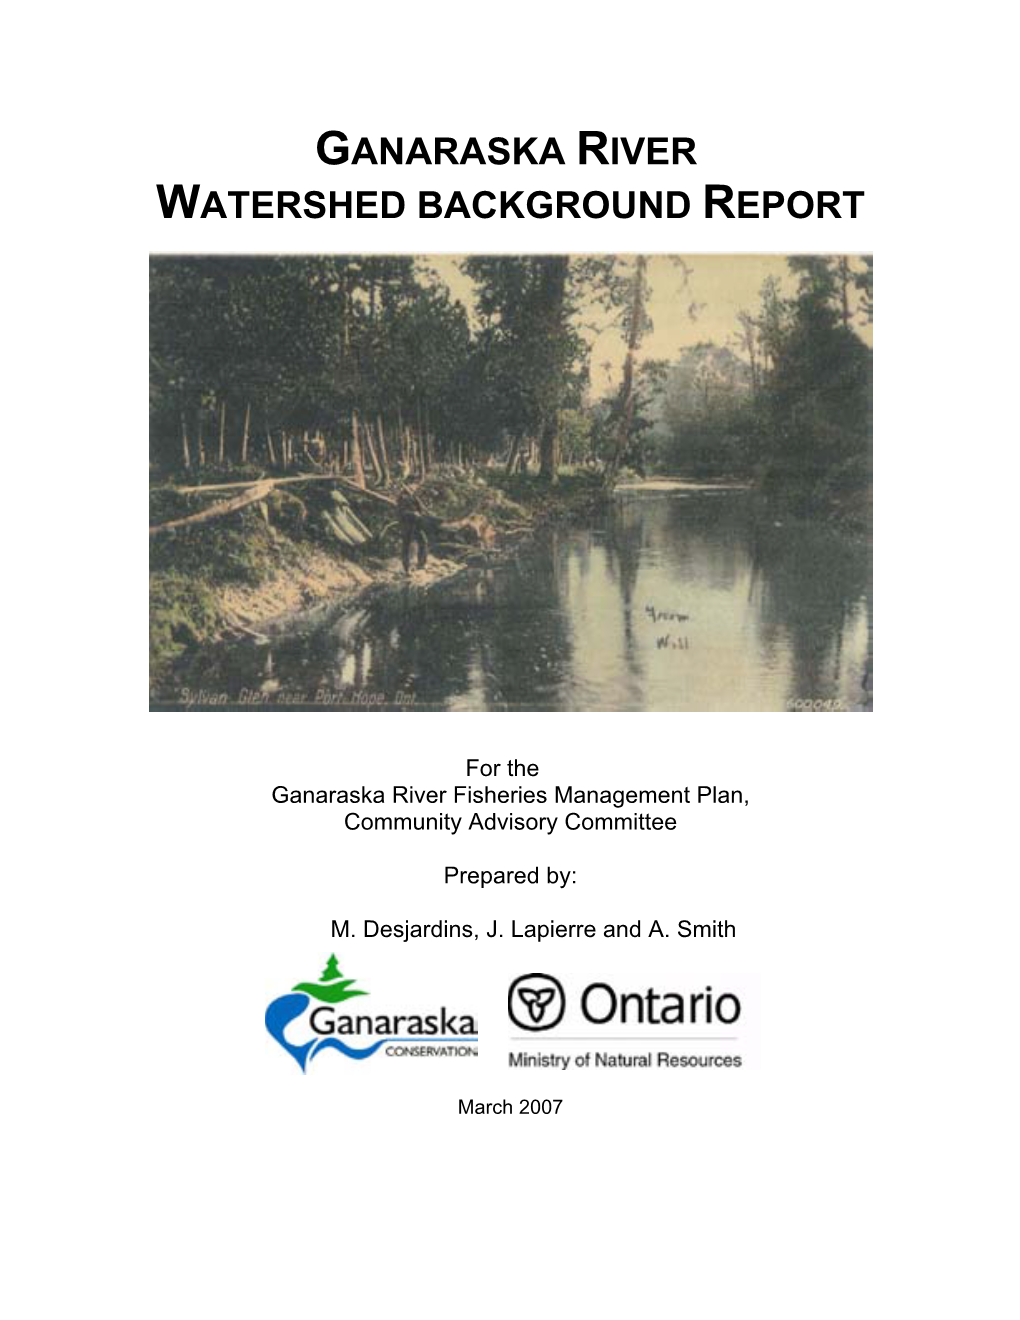 Ganaraska River Watershed Background Report